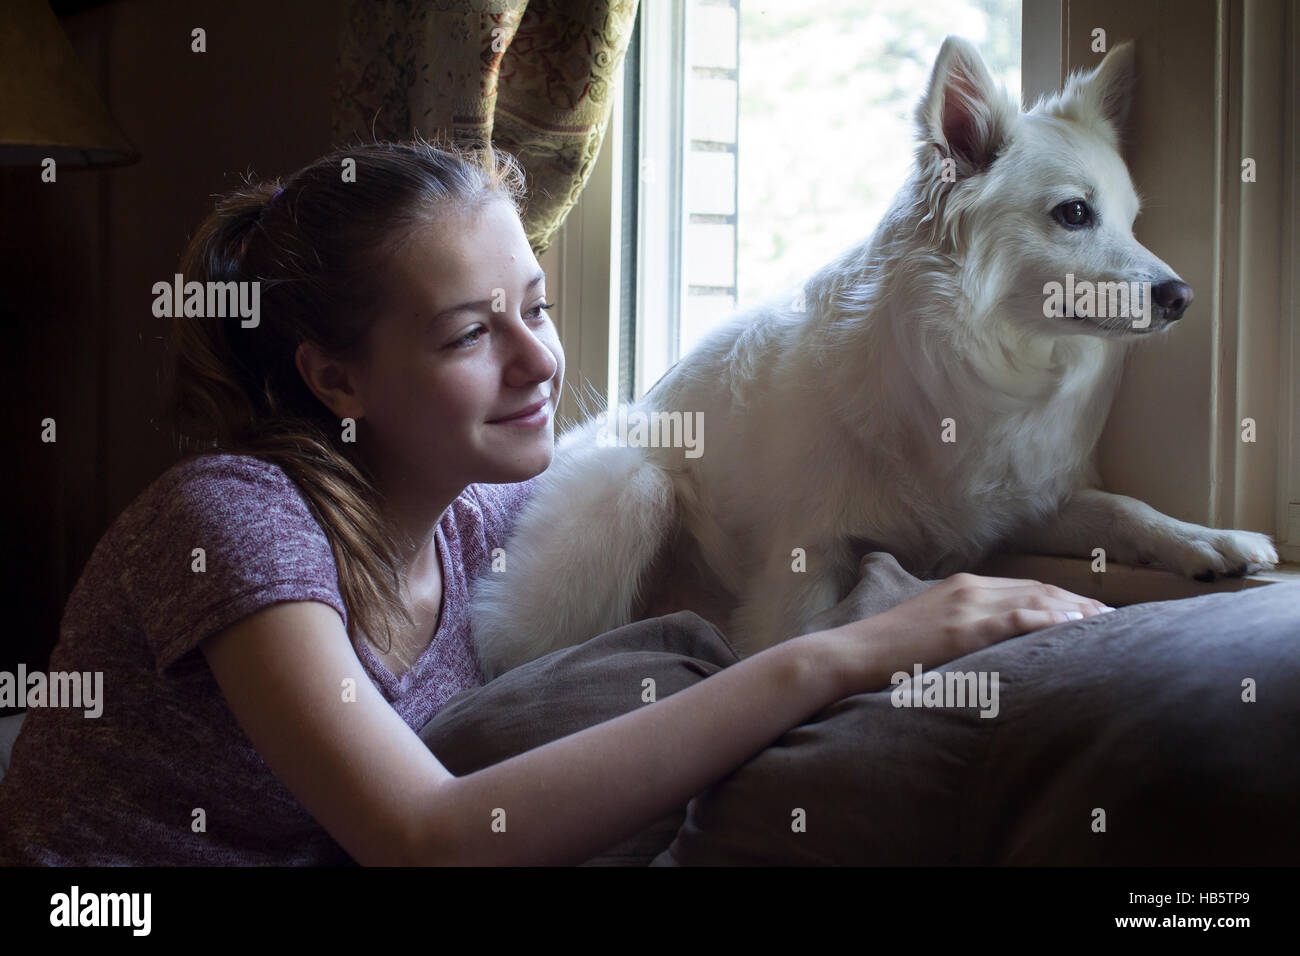 Teenage chica rubia con un perro blanco mirando a través de la ventana Foto de stock